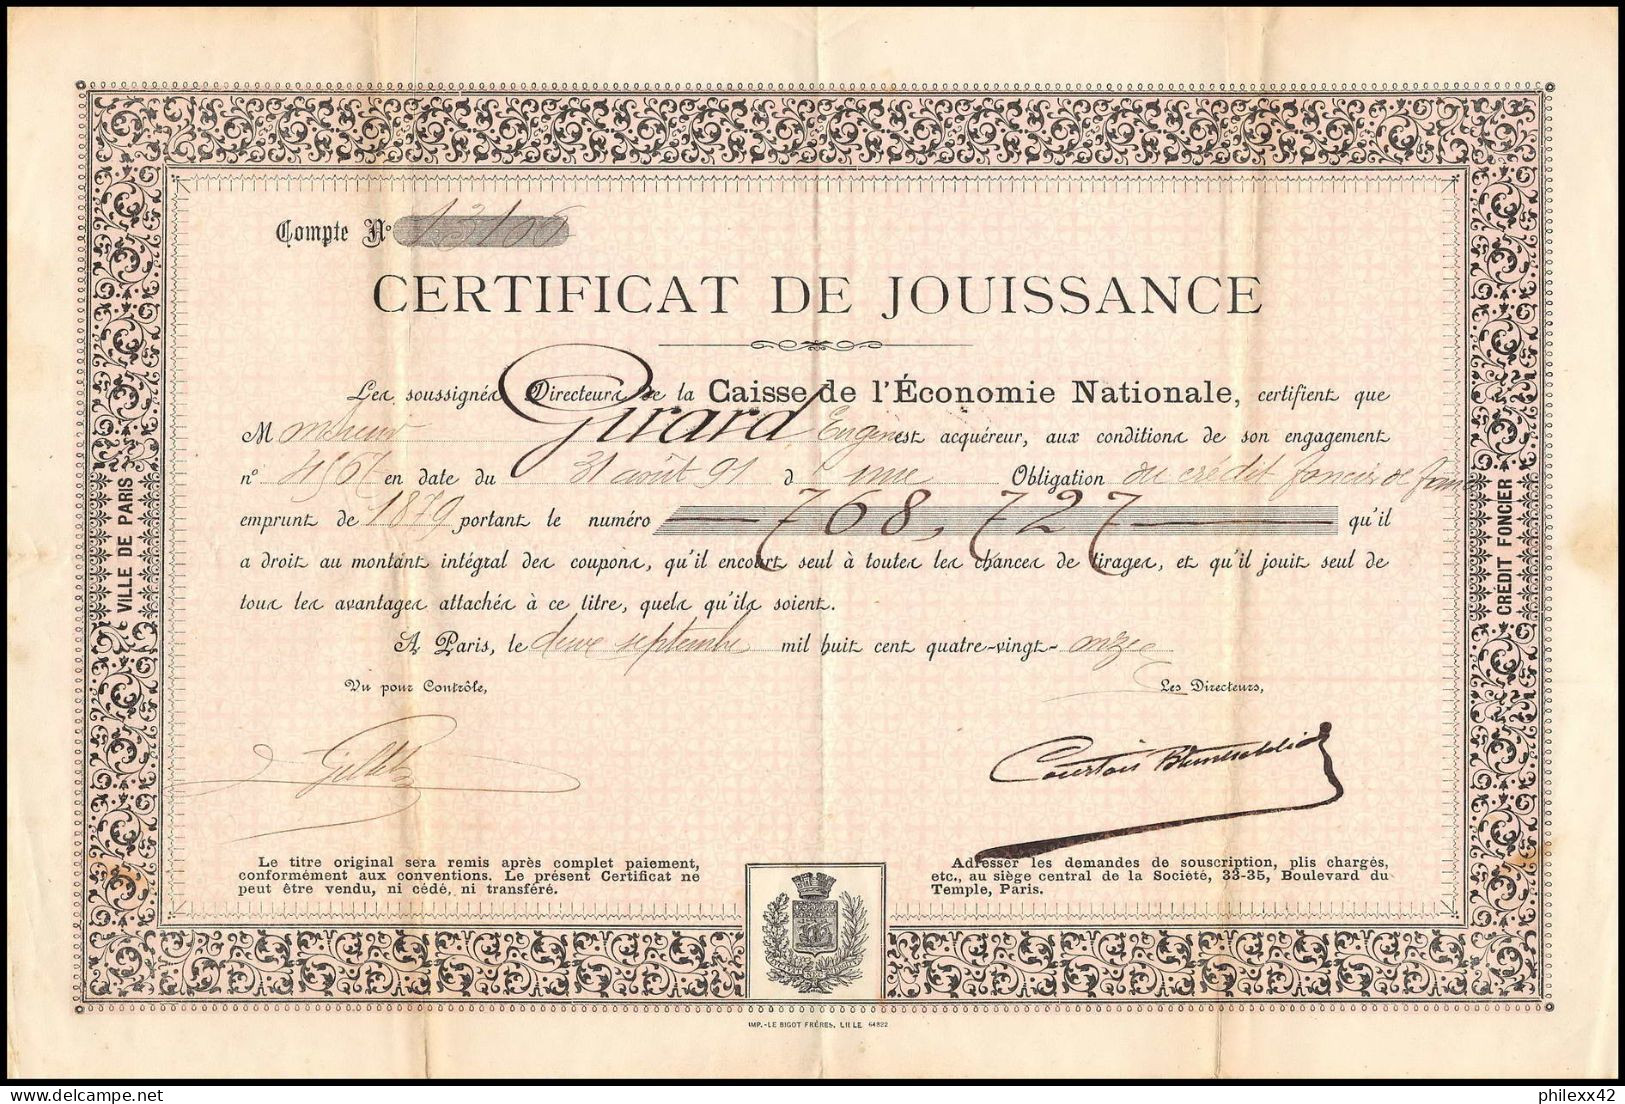 51190 Certificat De Jouissance Girard Caisse De L'economie Nationale Paris 1891 Document - Bank & Insurance